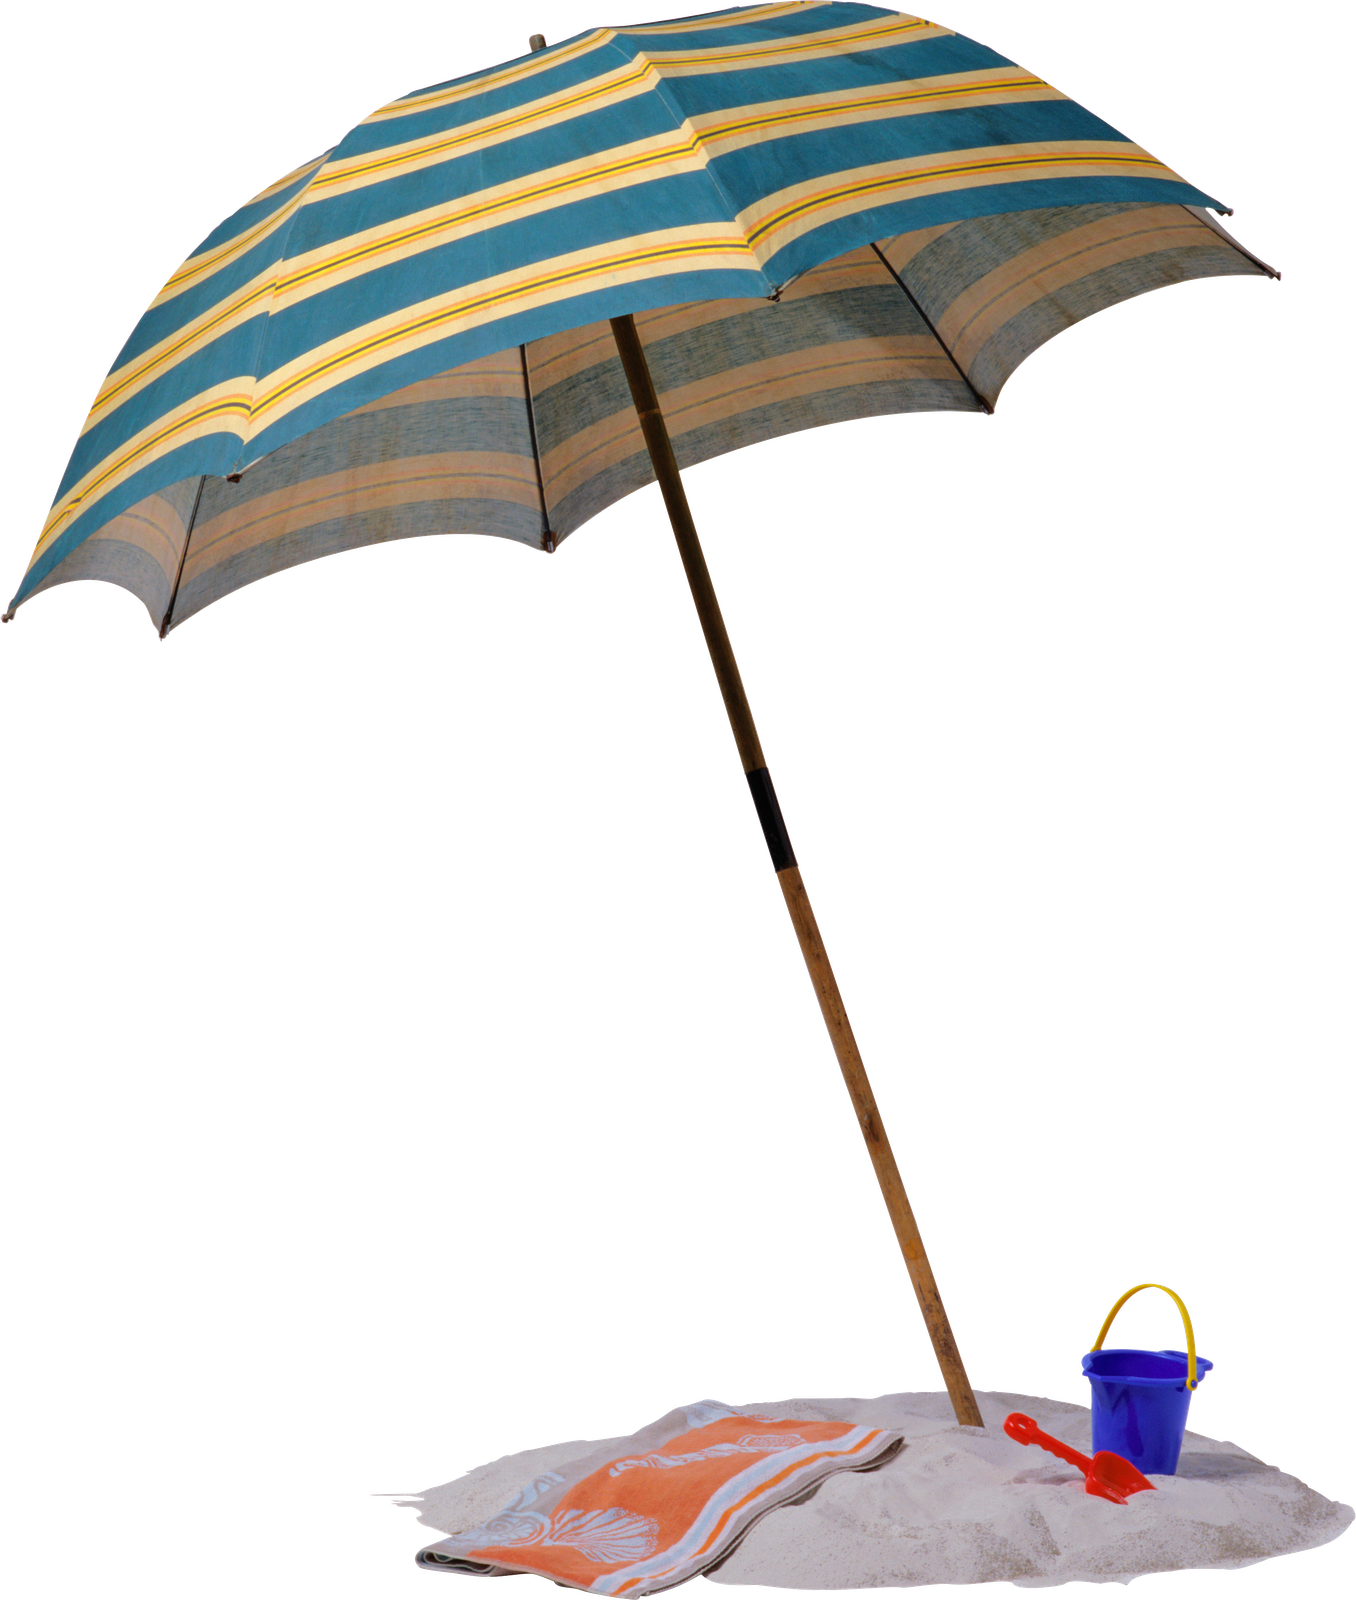 Морской зонтик. Пляжный зонтик. Пляжный зонт на прозрачном фоне. Зонт для пляжа. Летний зонтик.